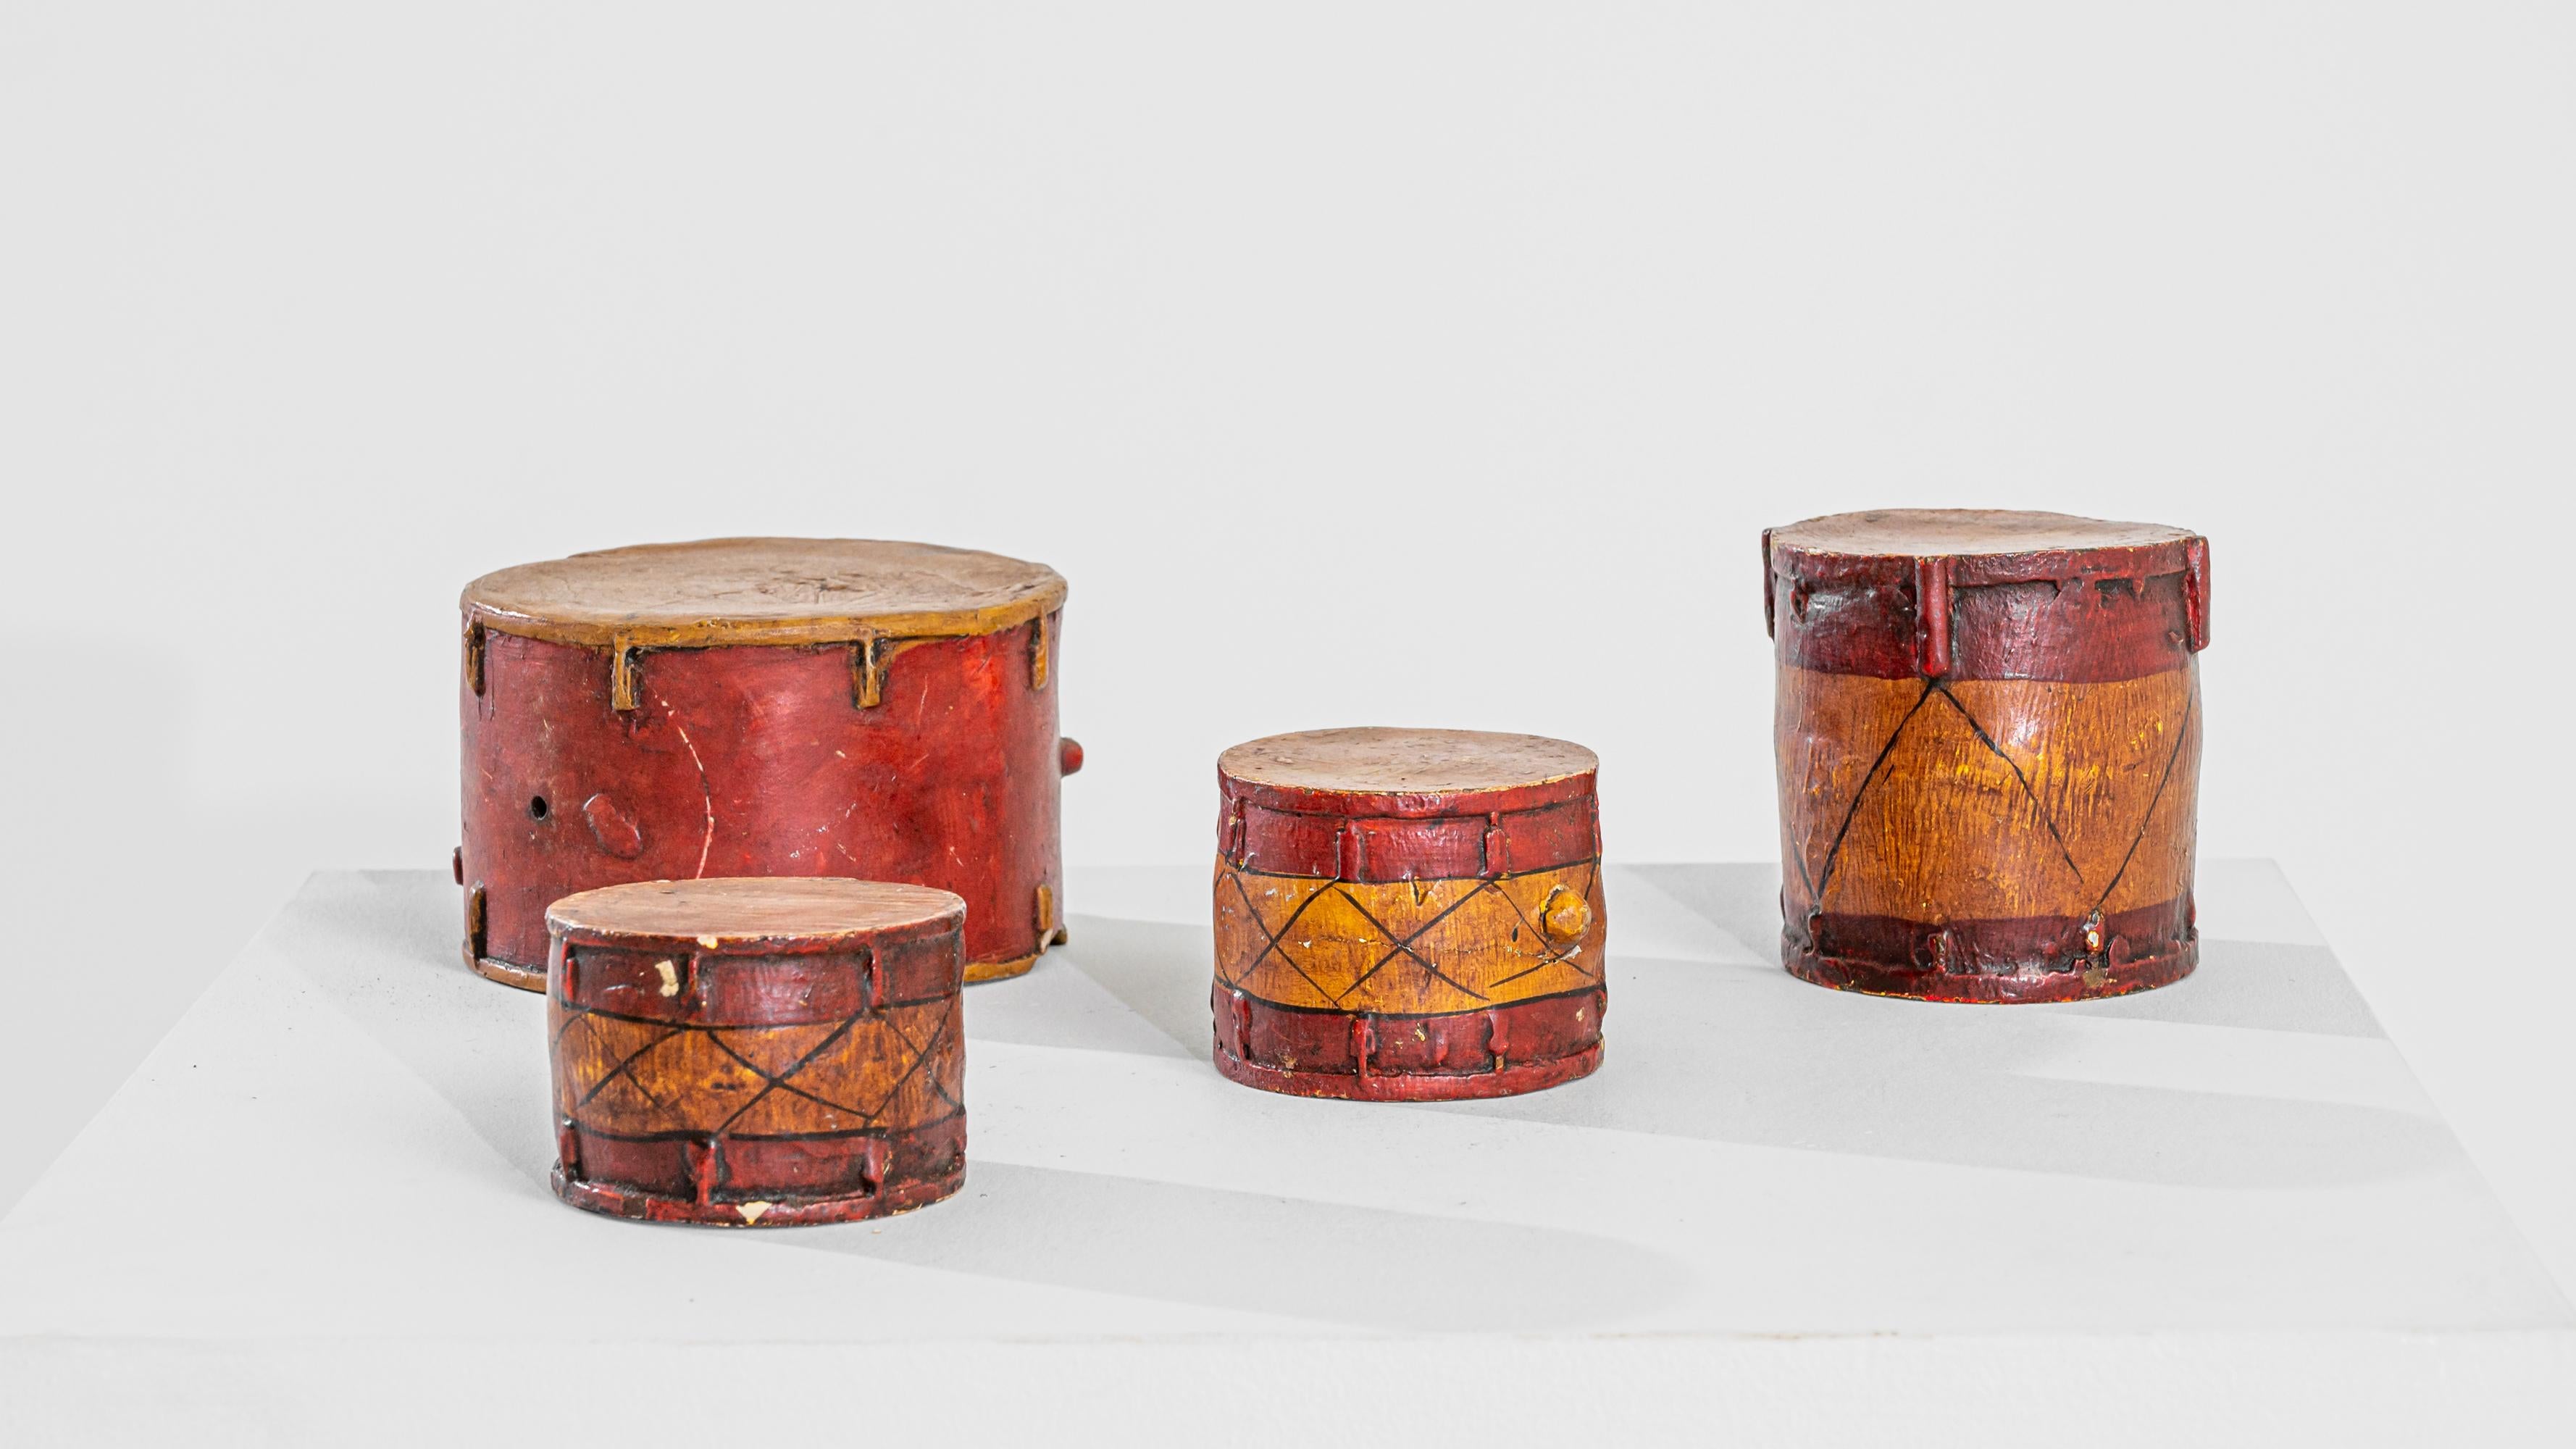 Rehaussez votre décor avec cet ensemble unique de tambours britanniques en terre cuite du XIXe siècle, composé d'un tambour de grande taille, d'un tambour de taille moyenne et de deux tambours plus petits. Fabriqués avec précision, ces tambours